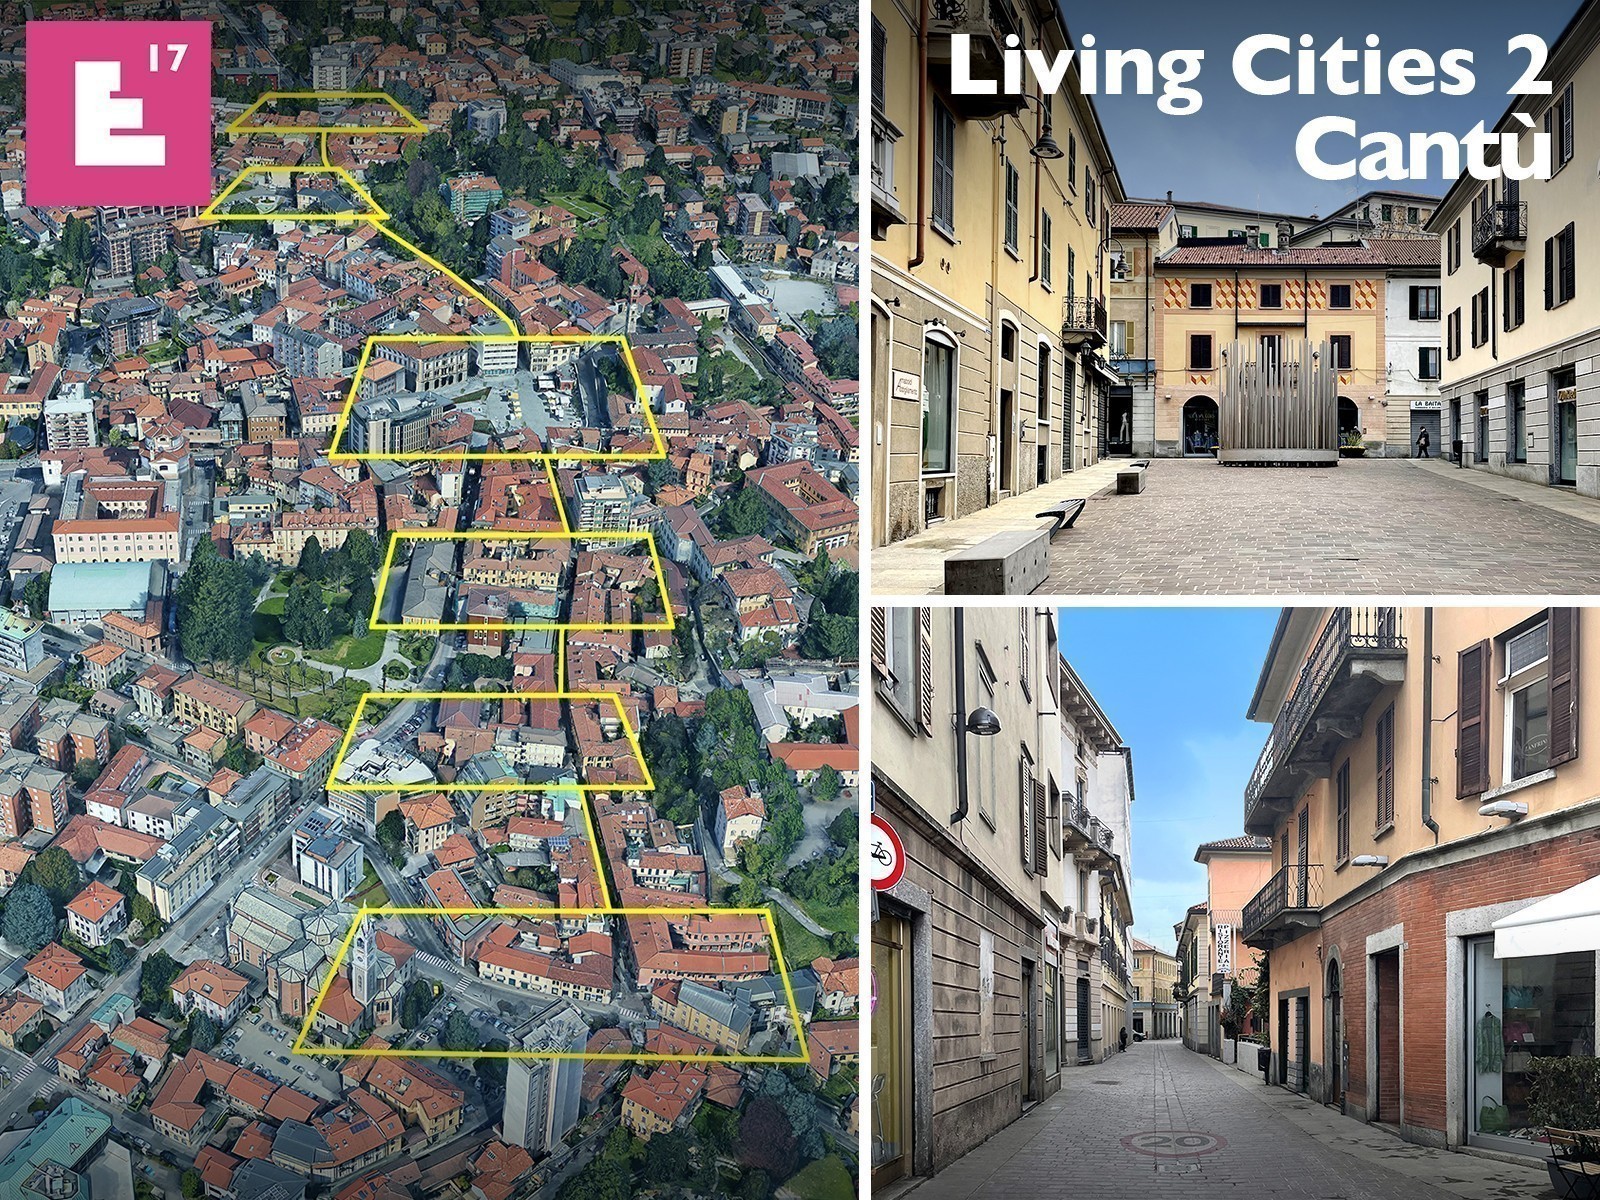 Europan 17 - Living Cities 2
Italia | Centro della città di Cantù